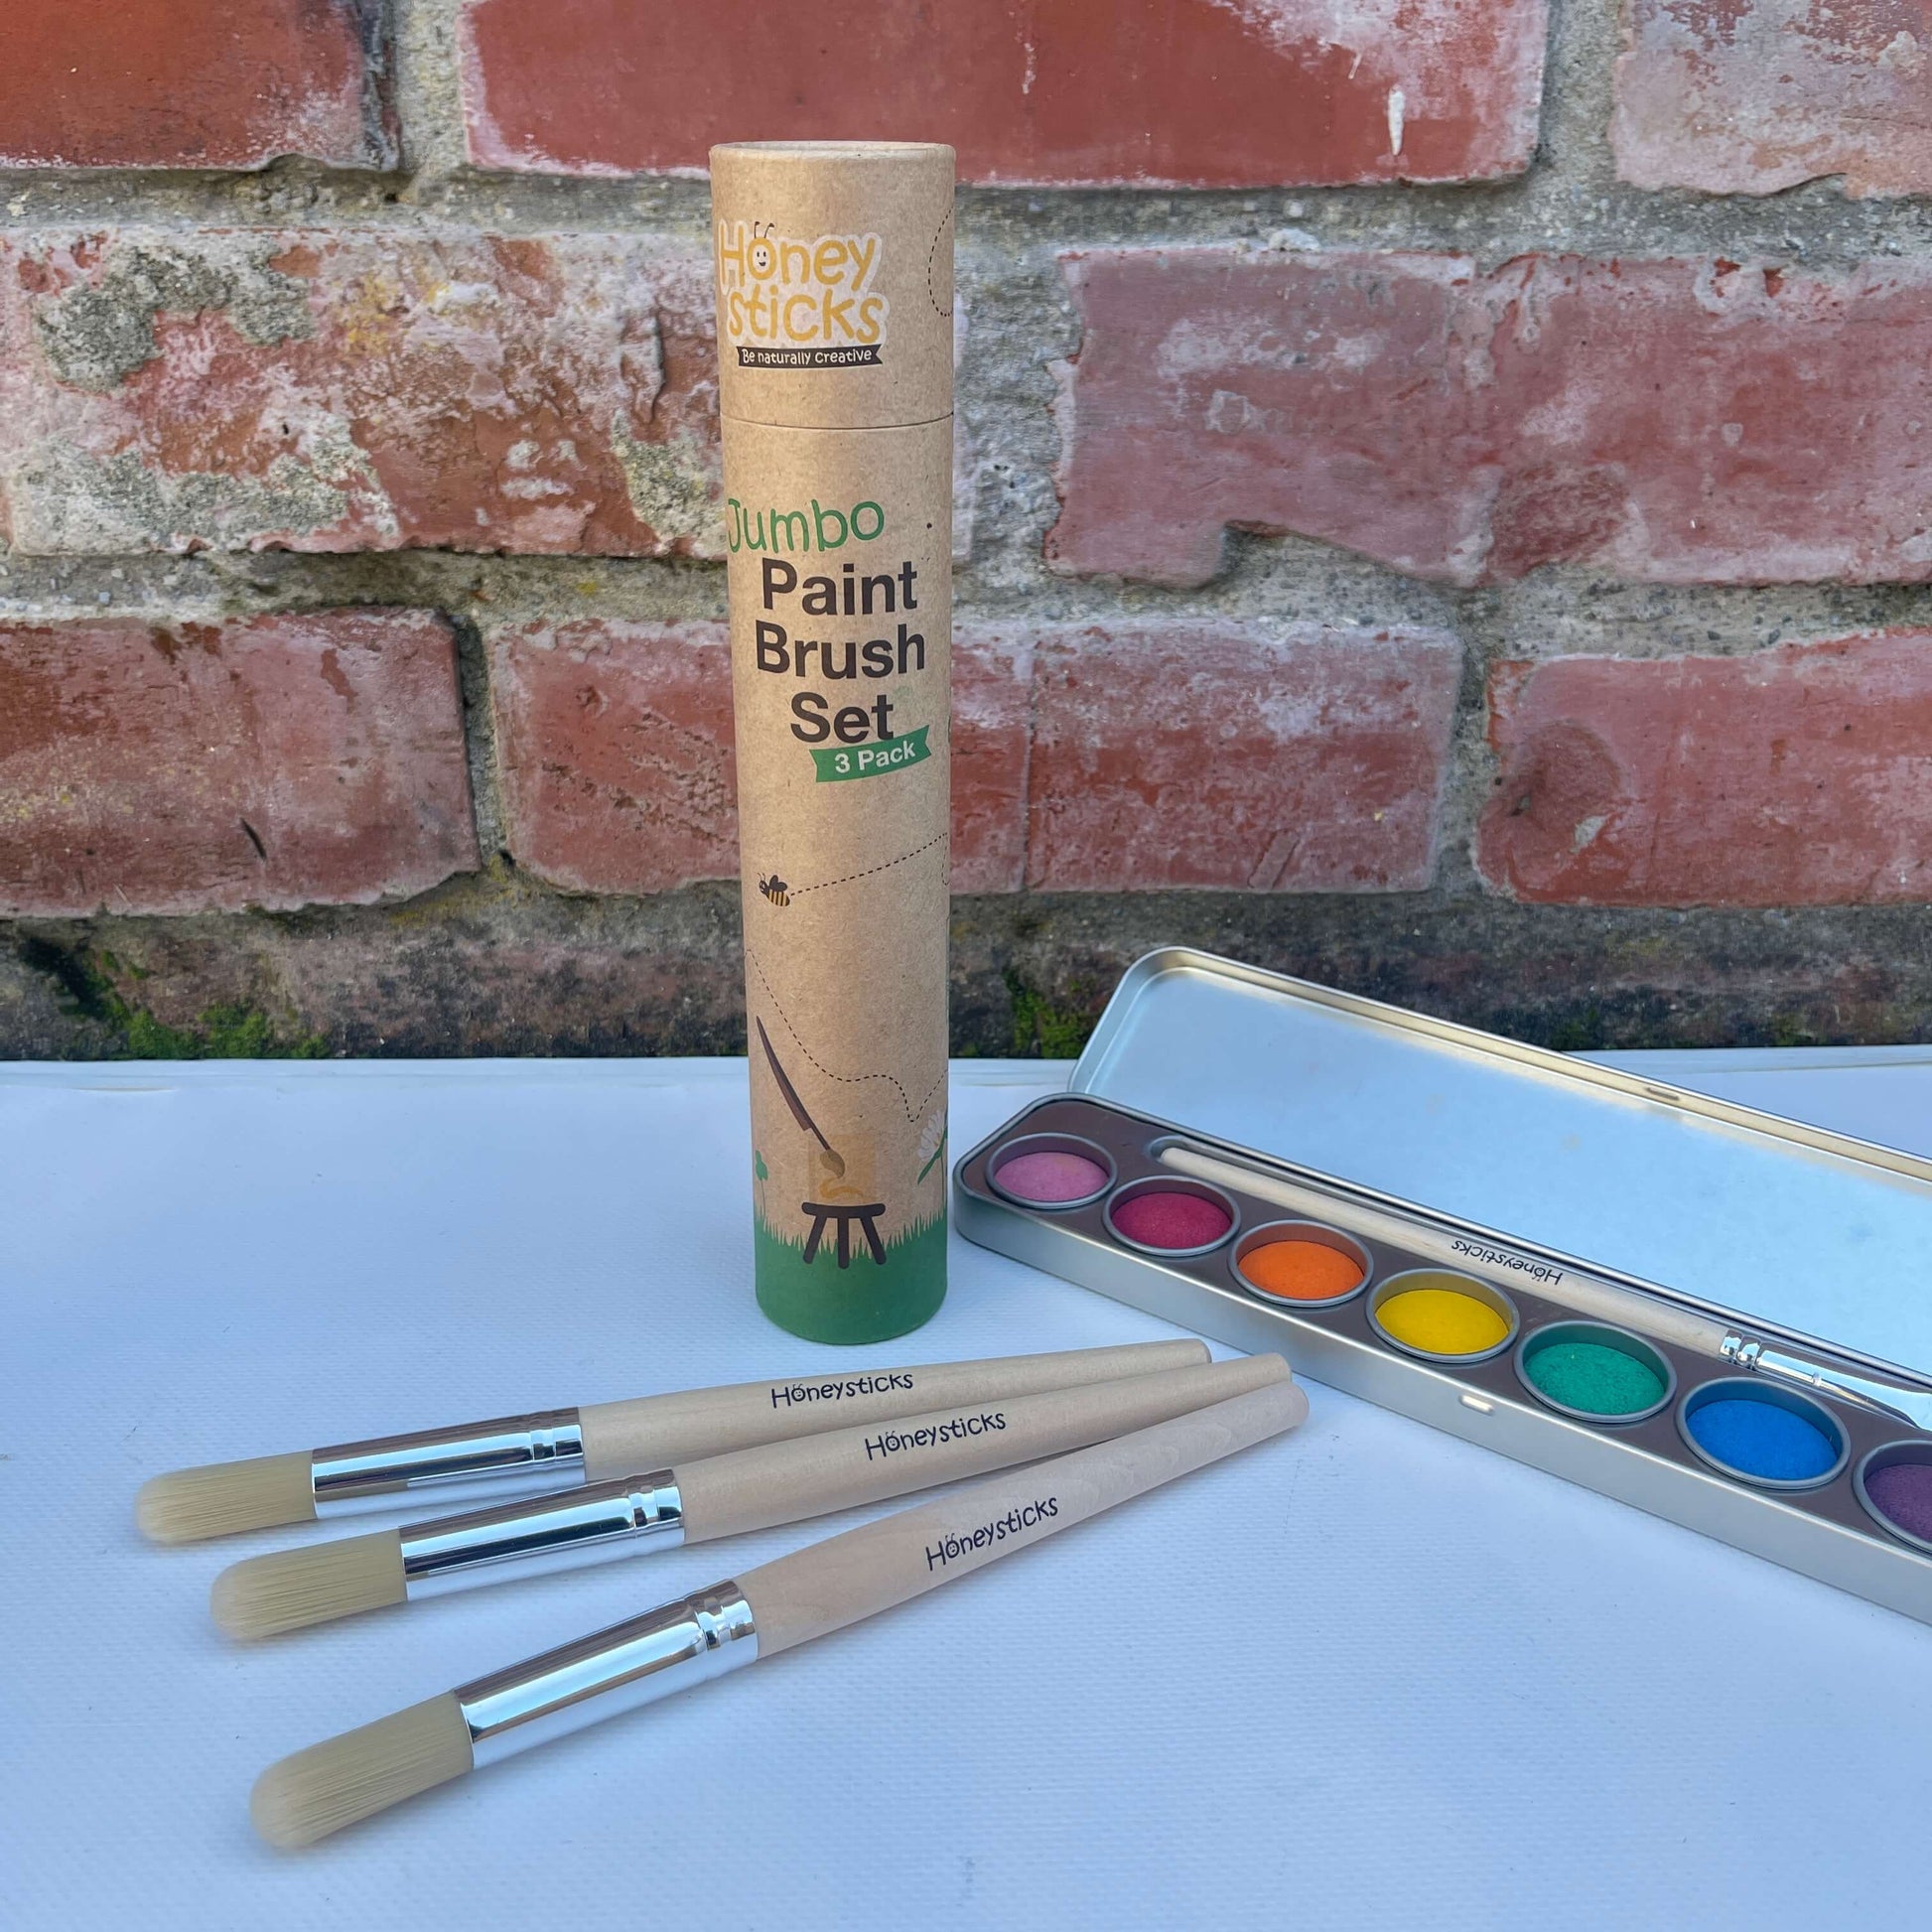 Honeysticks - Jumbo Paintbrush Set